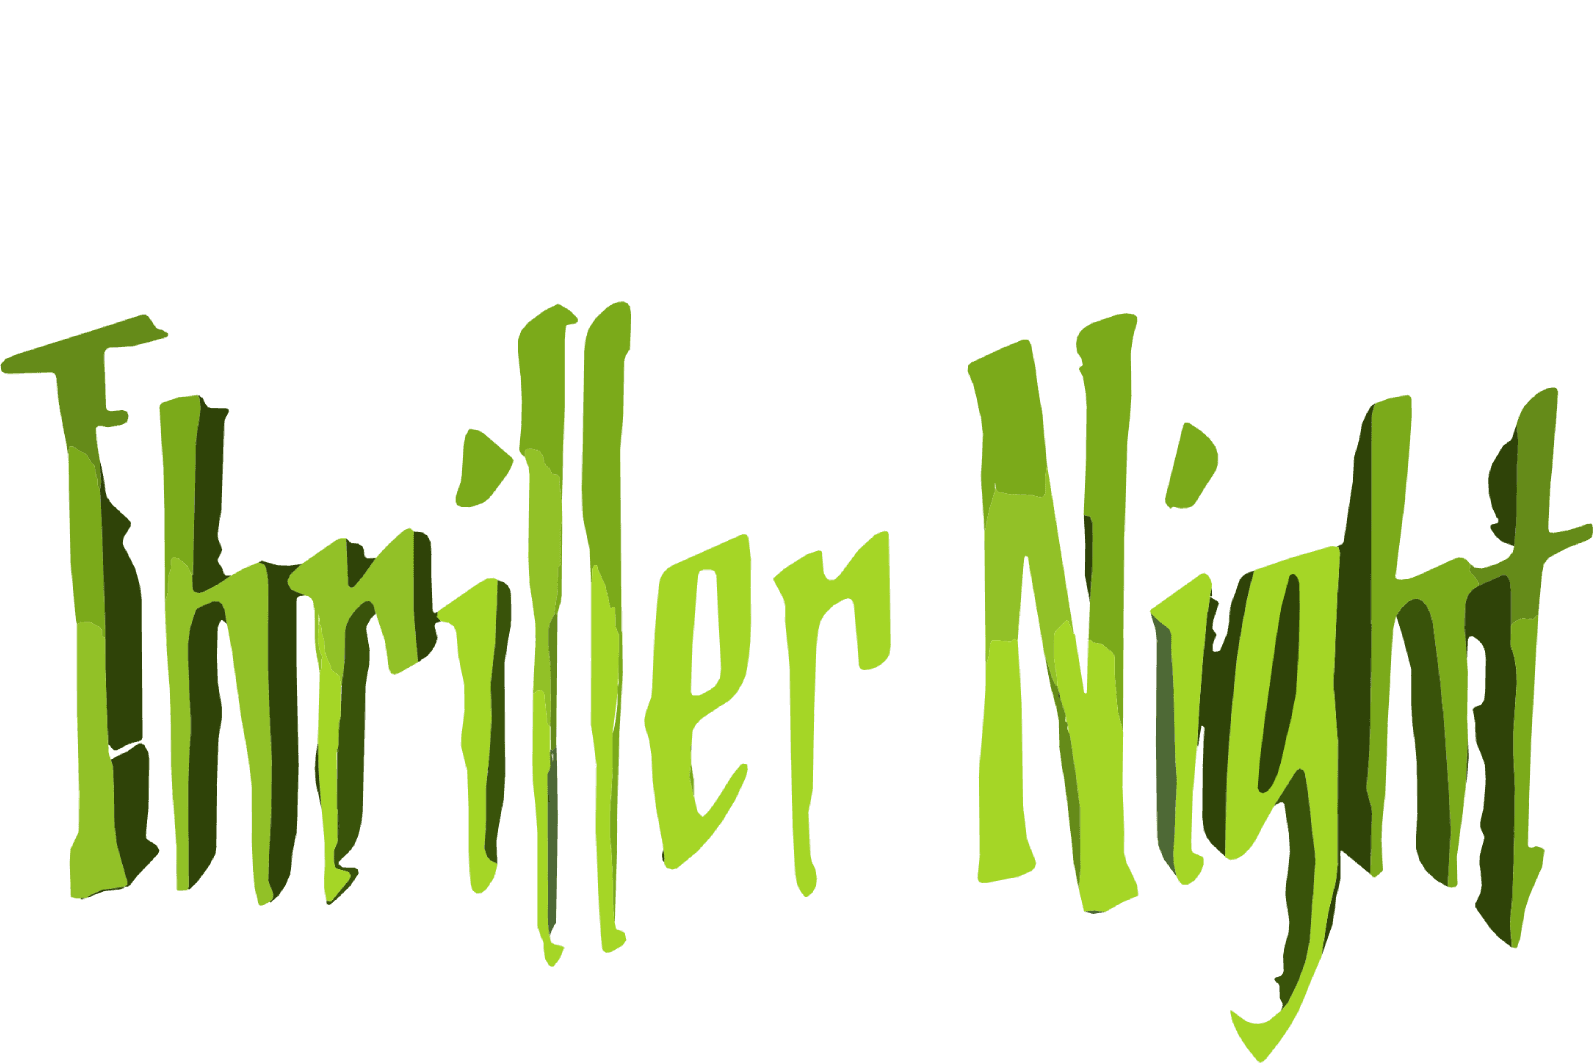 Thriller Night logo